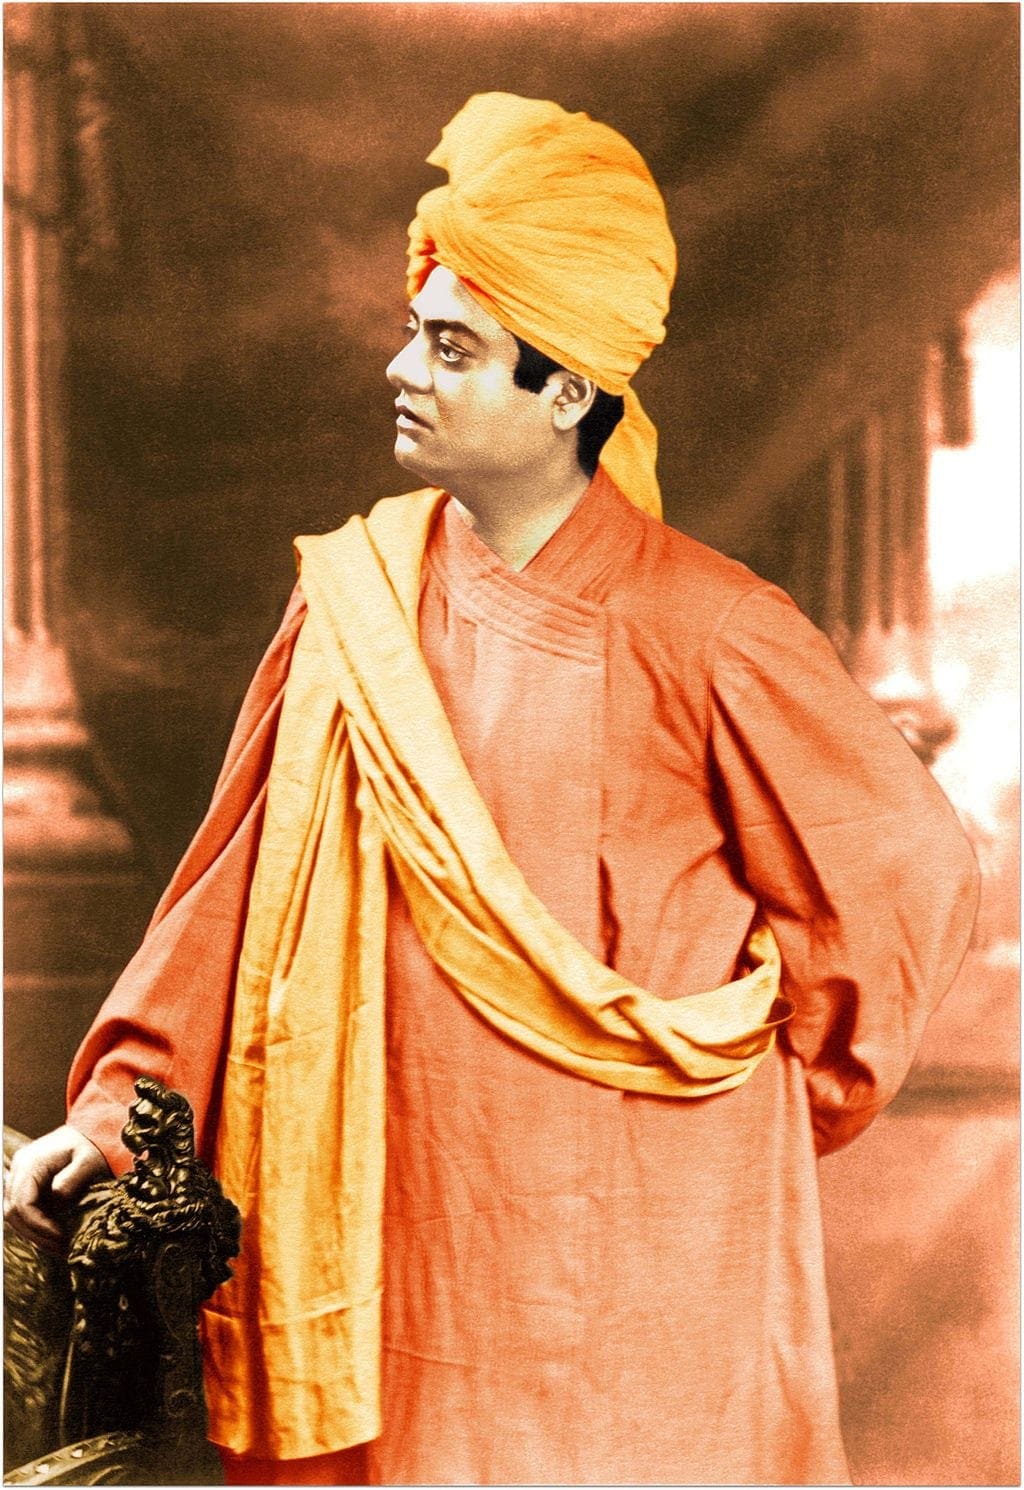 Swami Vivekananda during Foreign Tour (London)